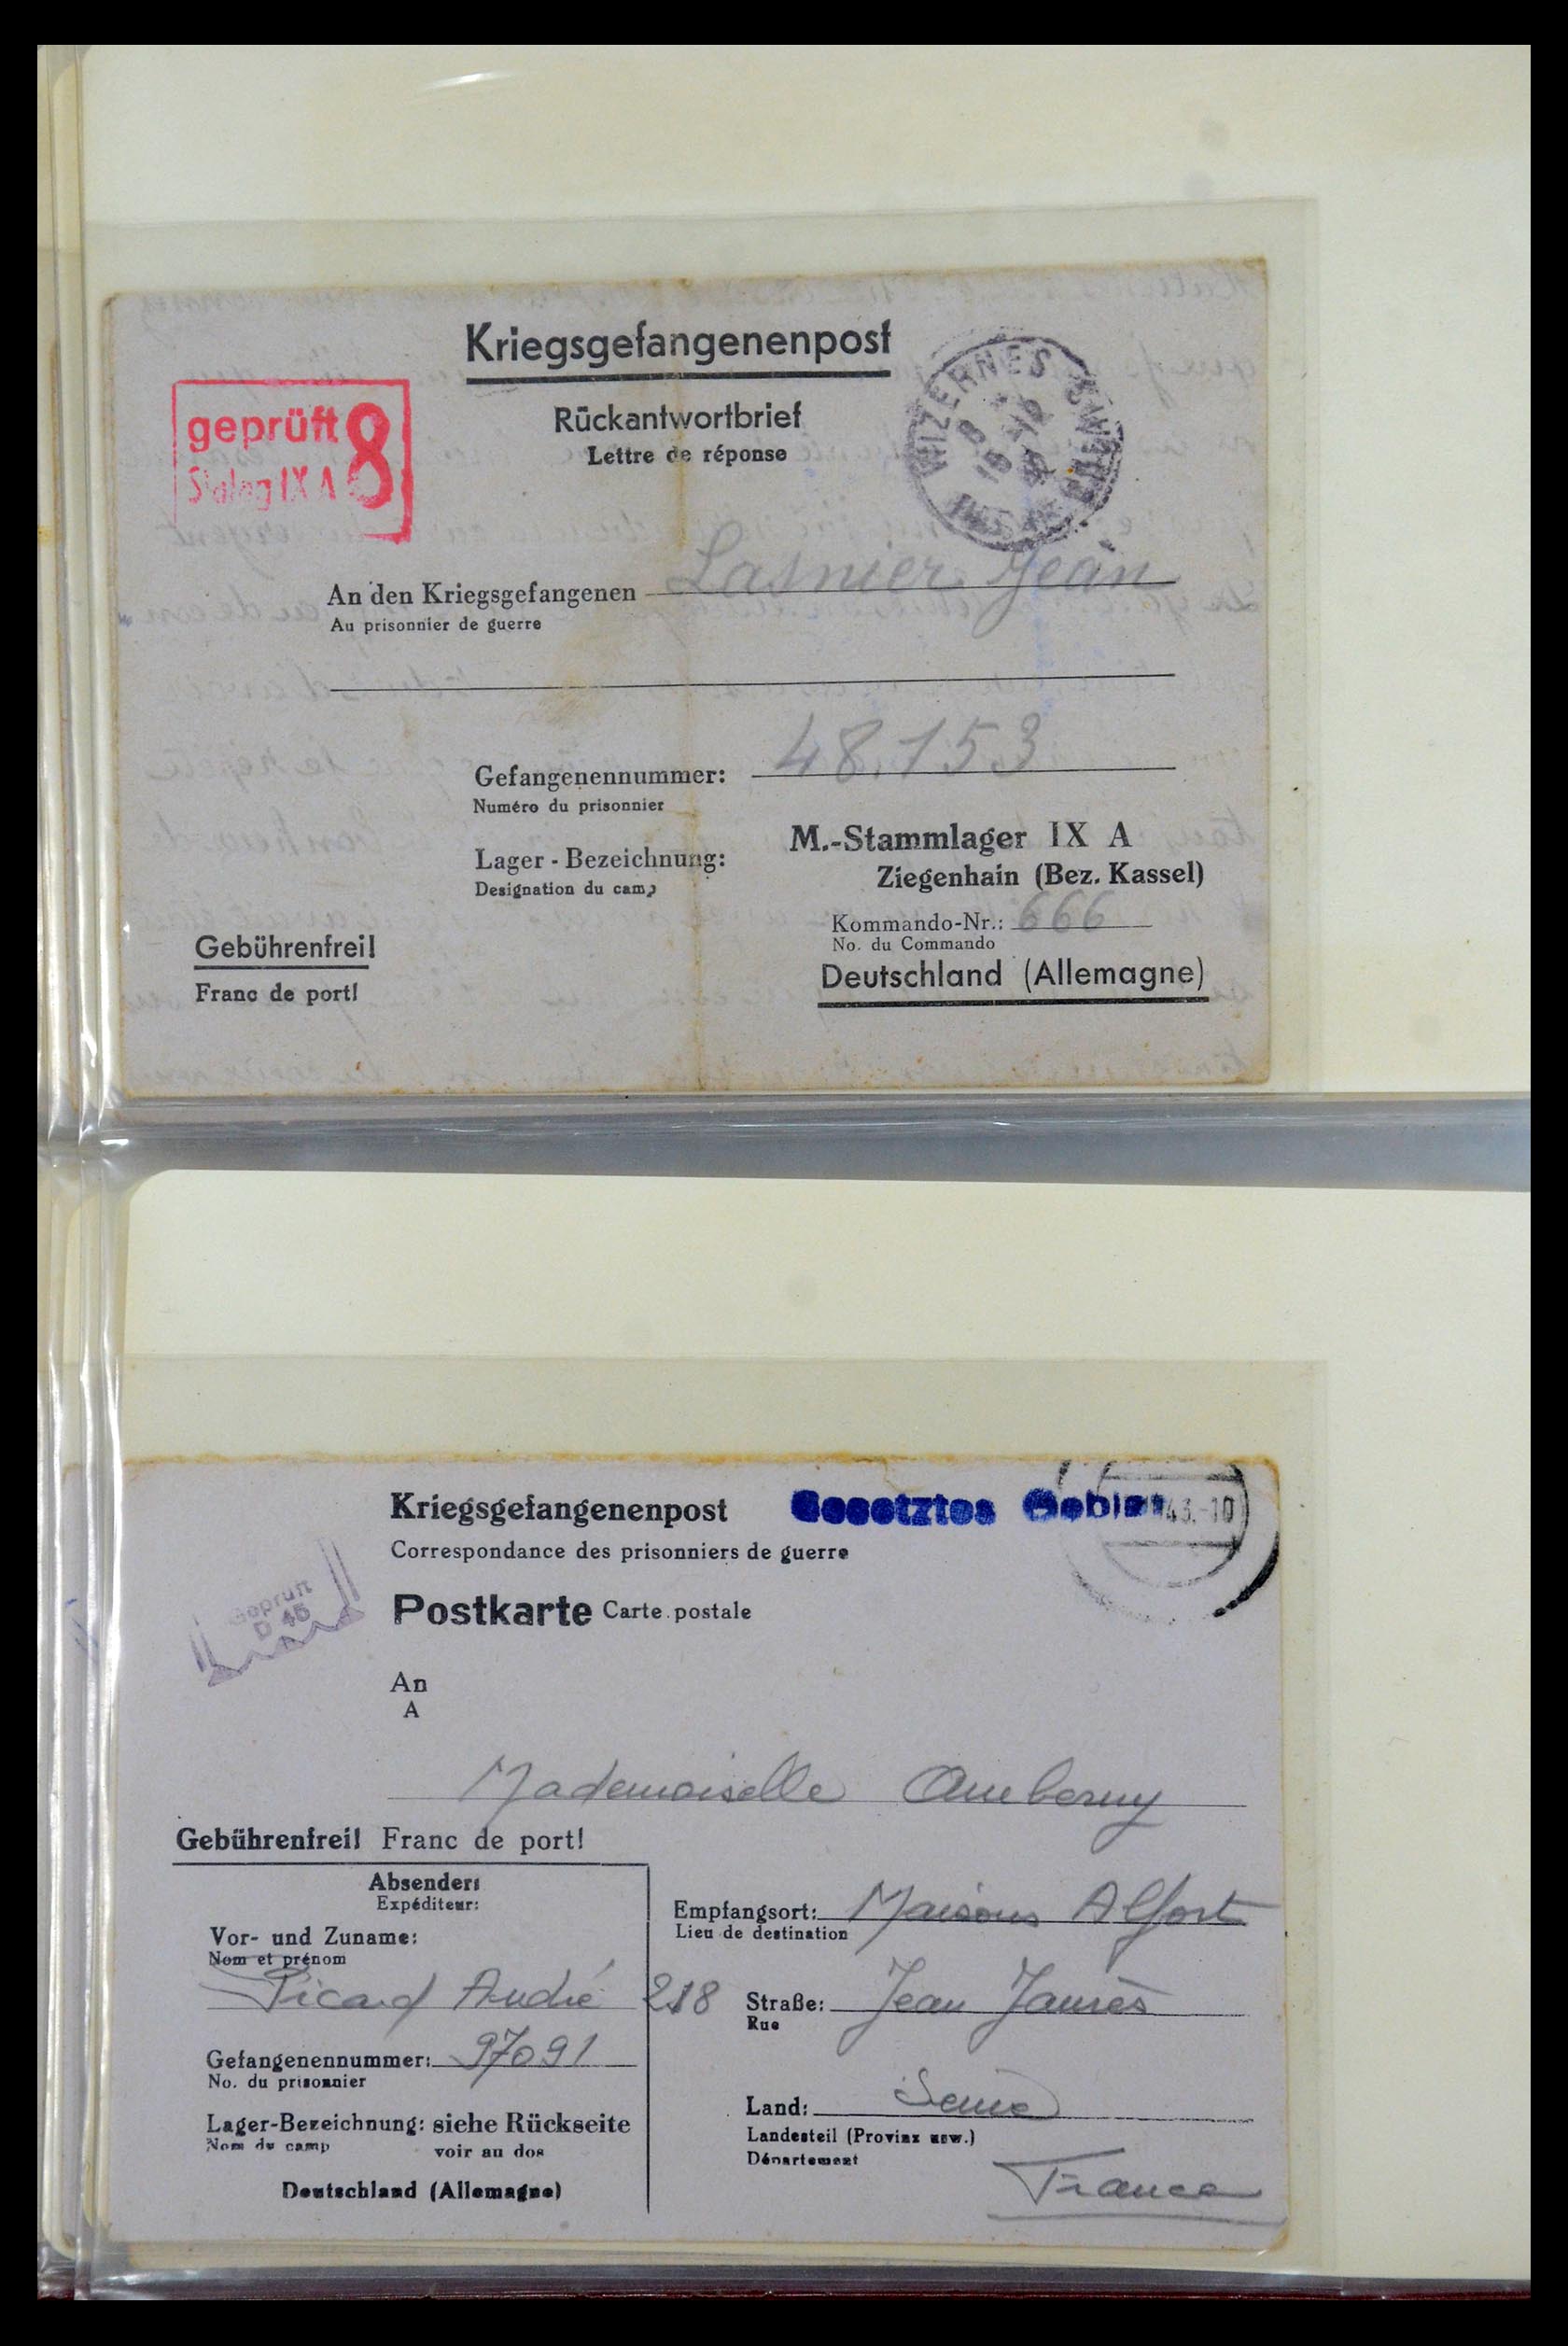 35599 016 - Stamp Collection 35599 Germany prisoner of war cards 1940-1944.